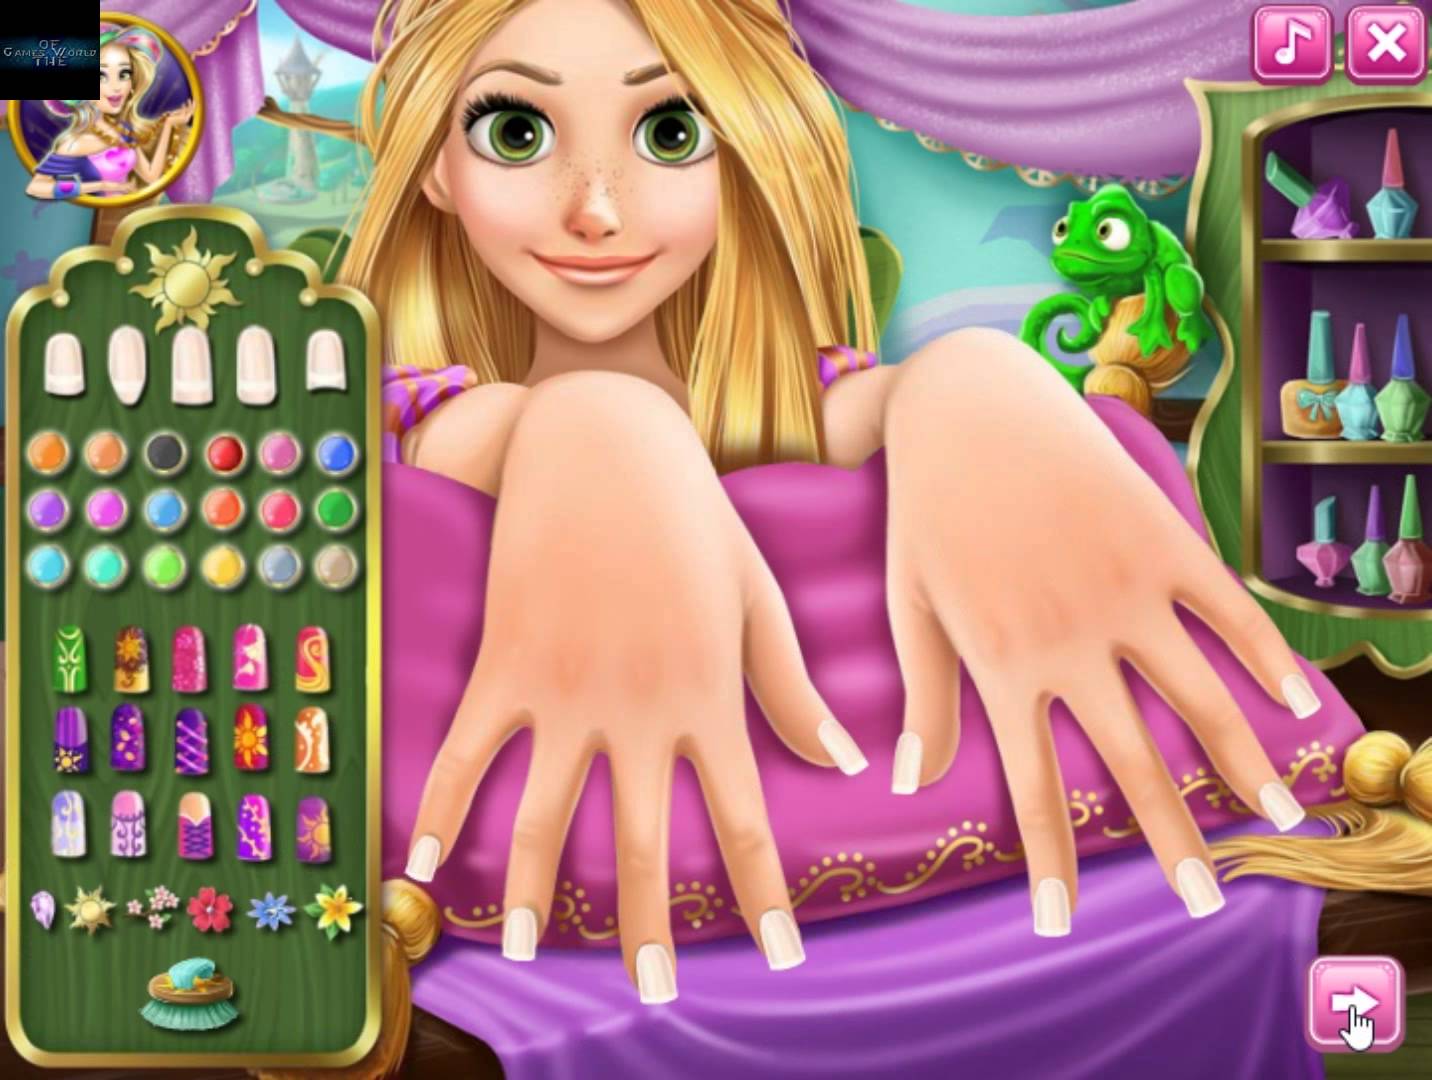 Где есть такие игры разные. Игры для девочек ногти. Классные игры для девочек. Игры макияж и одевалки. Популярные игры для девочек.